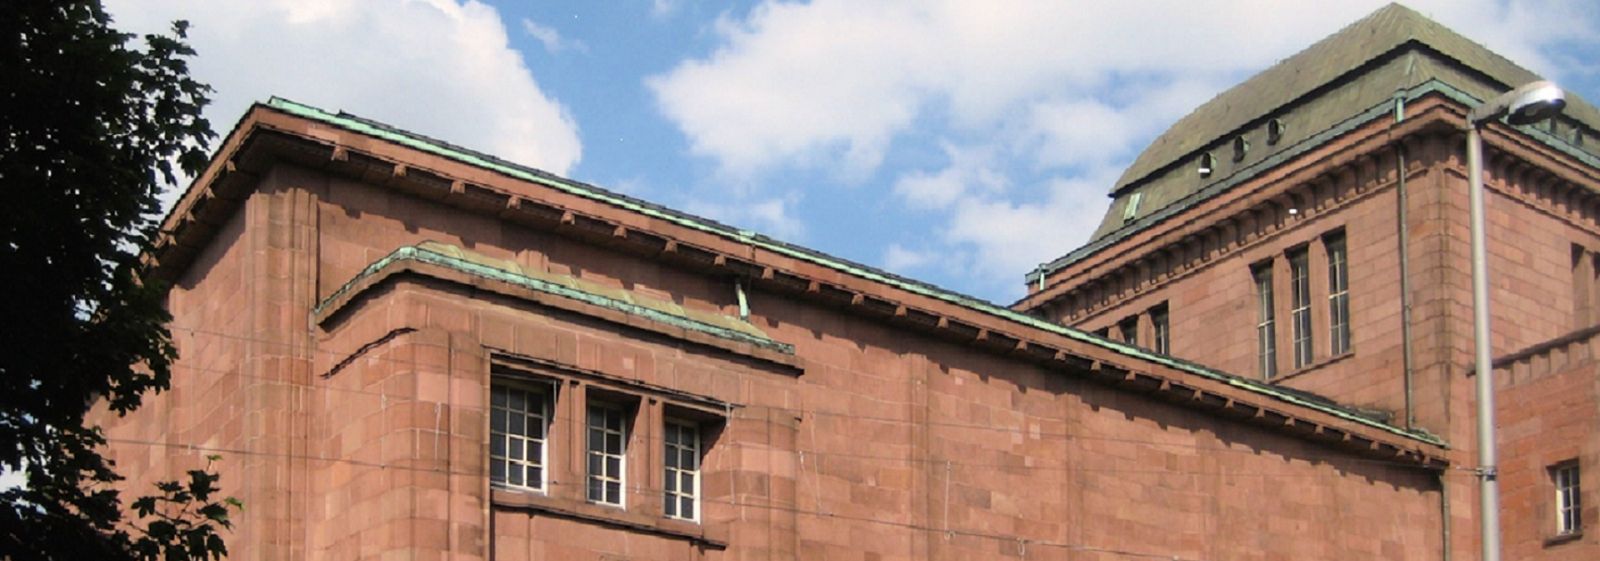 Der Billing-Bau, ein Gebäude der Kunsthalle Mannheim aus dem Jahr 1907, wurde komplett saniert. Die verschiedenen Maßnahmen sollen die Energiekosten um 25% reduzieren.